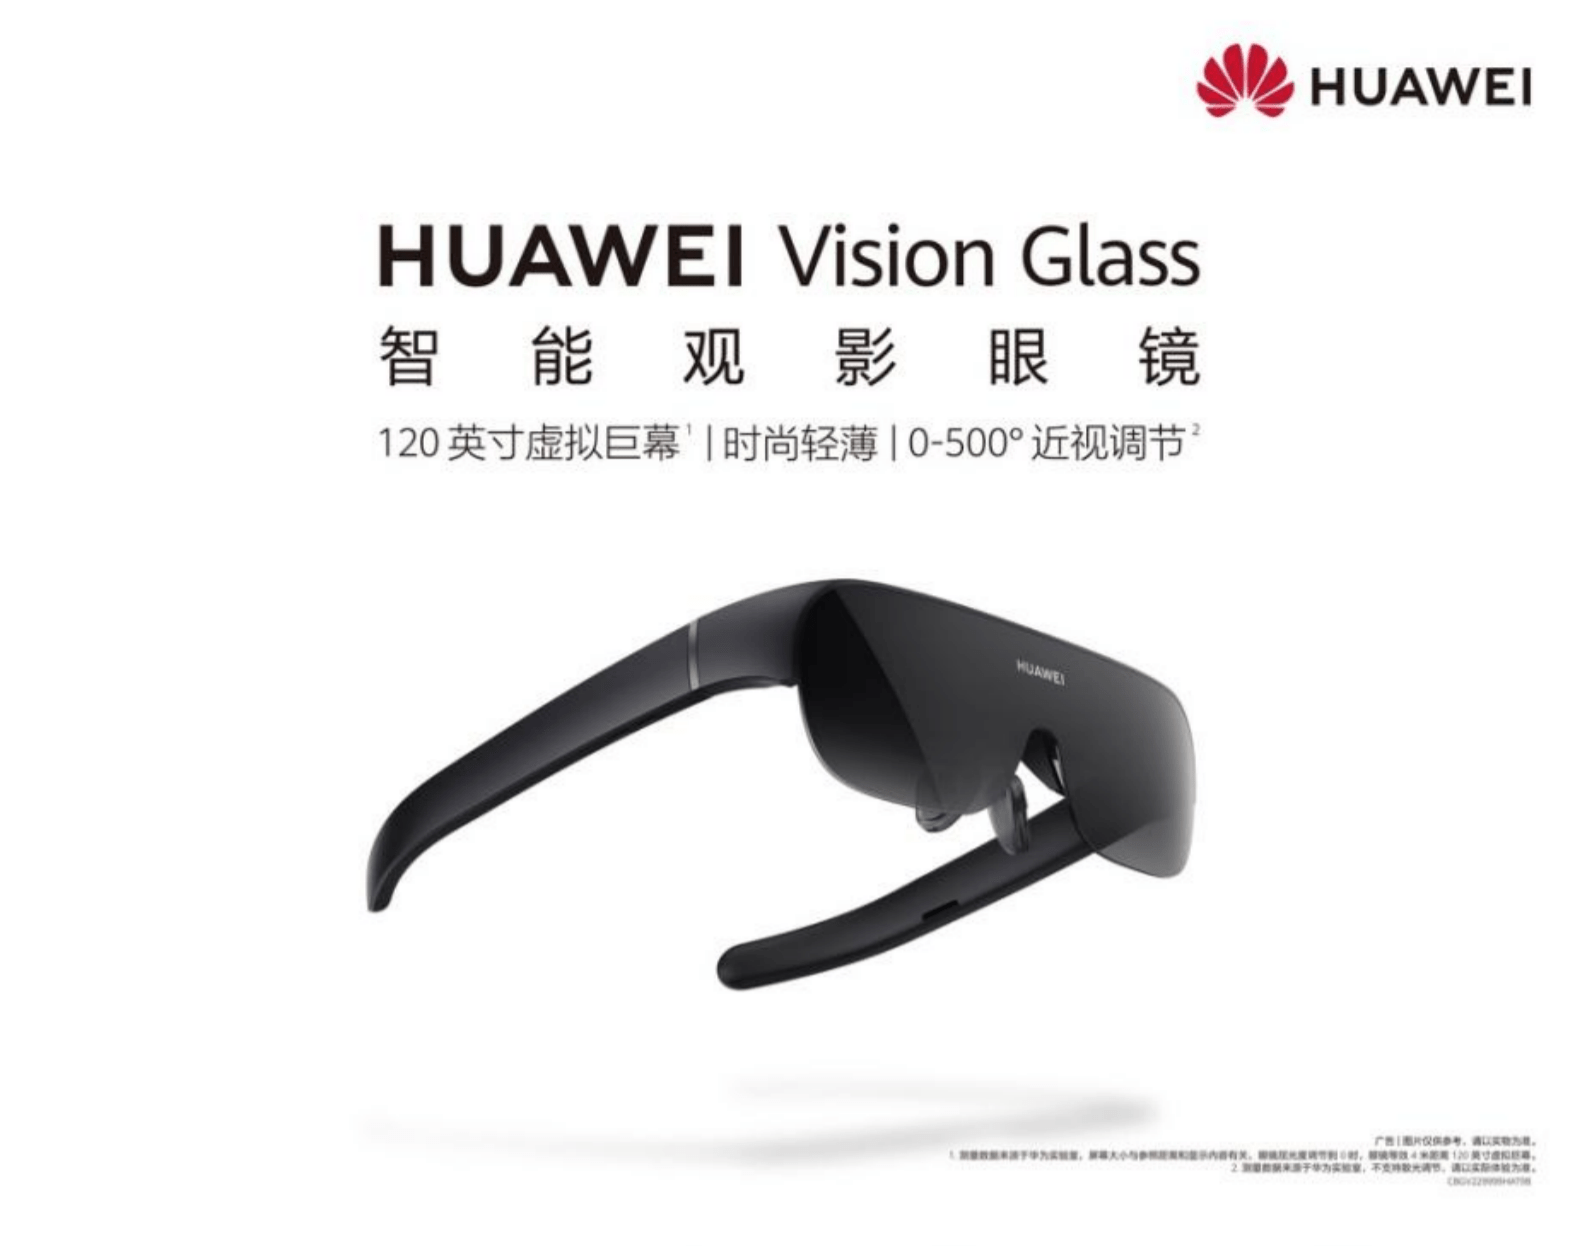 华为手机影藏功能大全
:华为发布首款智能观影眼镜：墨镜形态+AR技术，售价2999元